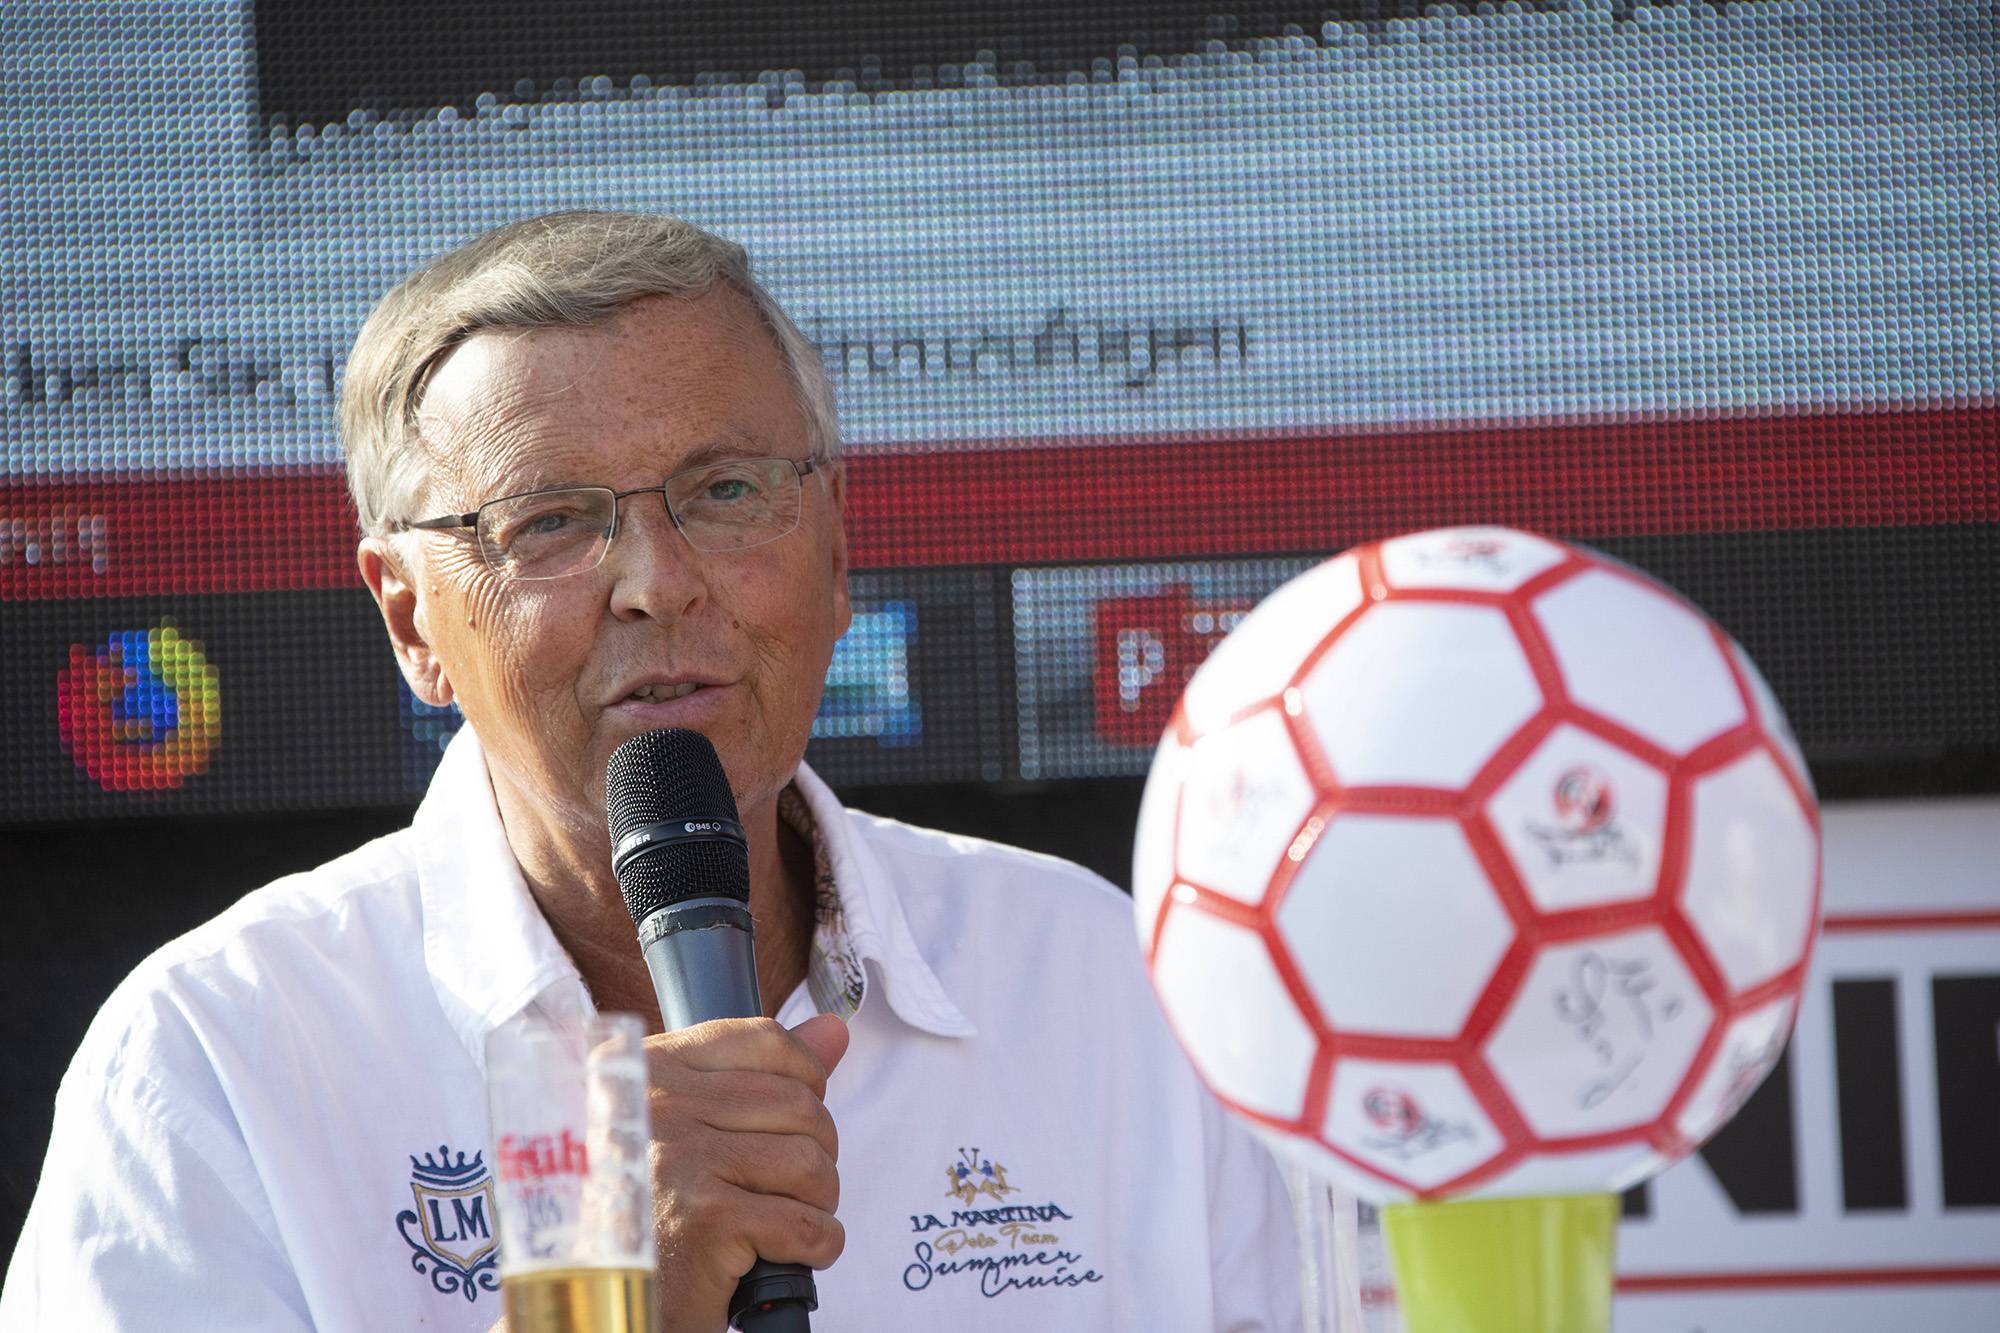 Das Bild zeigt den CDU-Politiker Wolfgang Bosbach mit einem Mikrofon in der Hand.